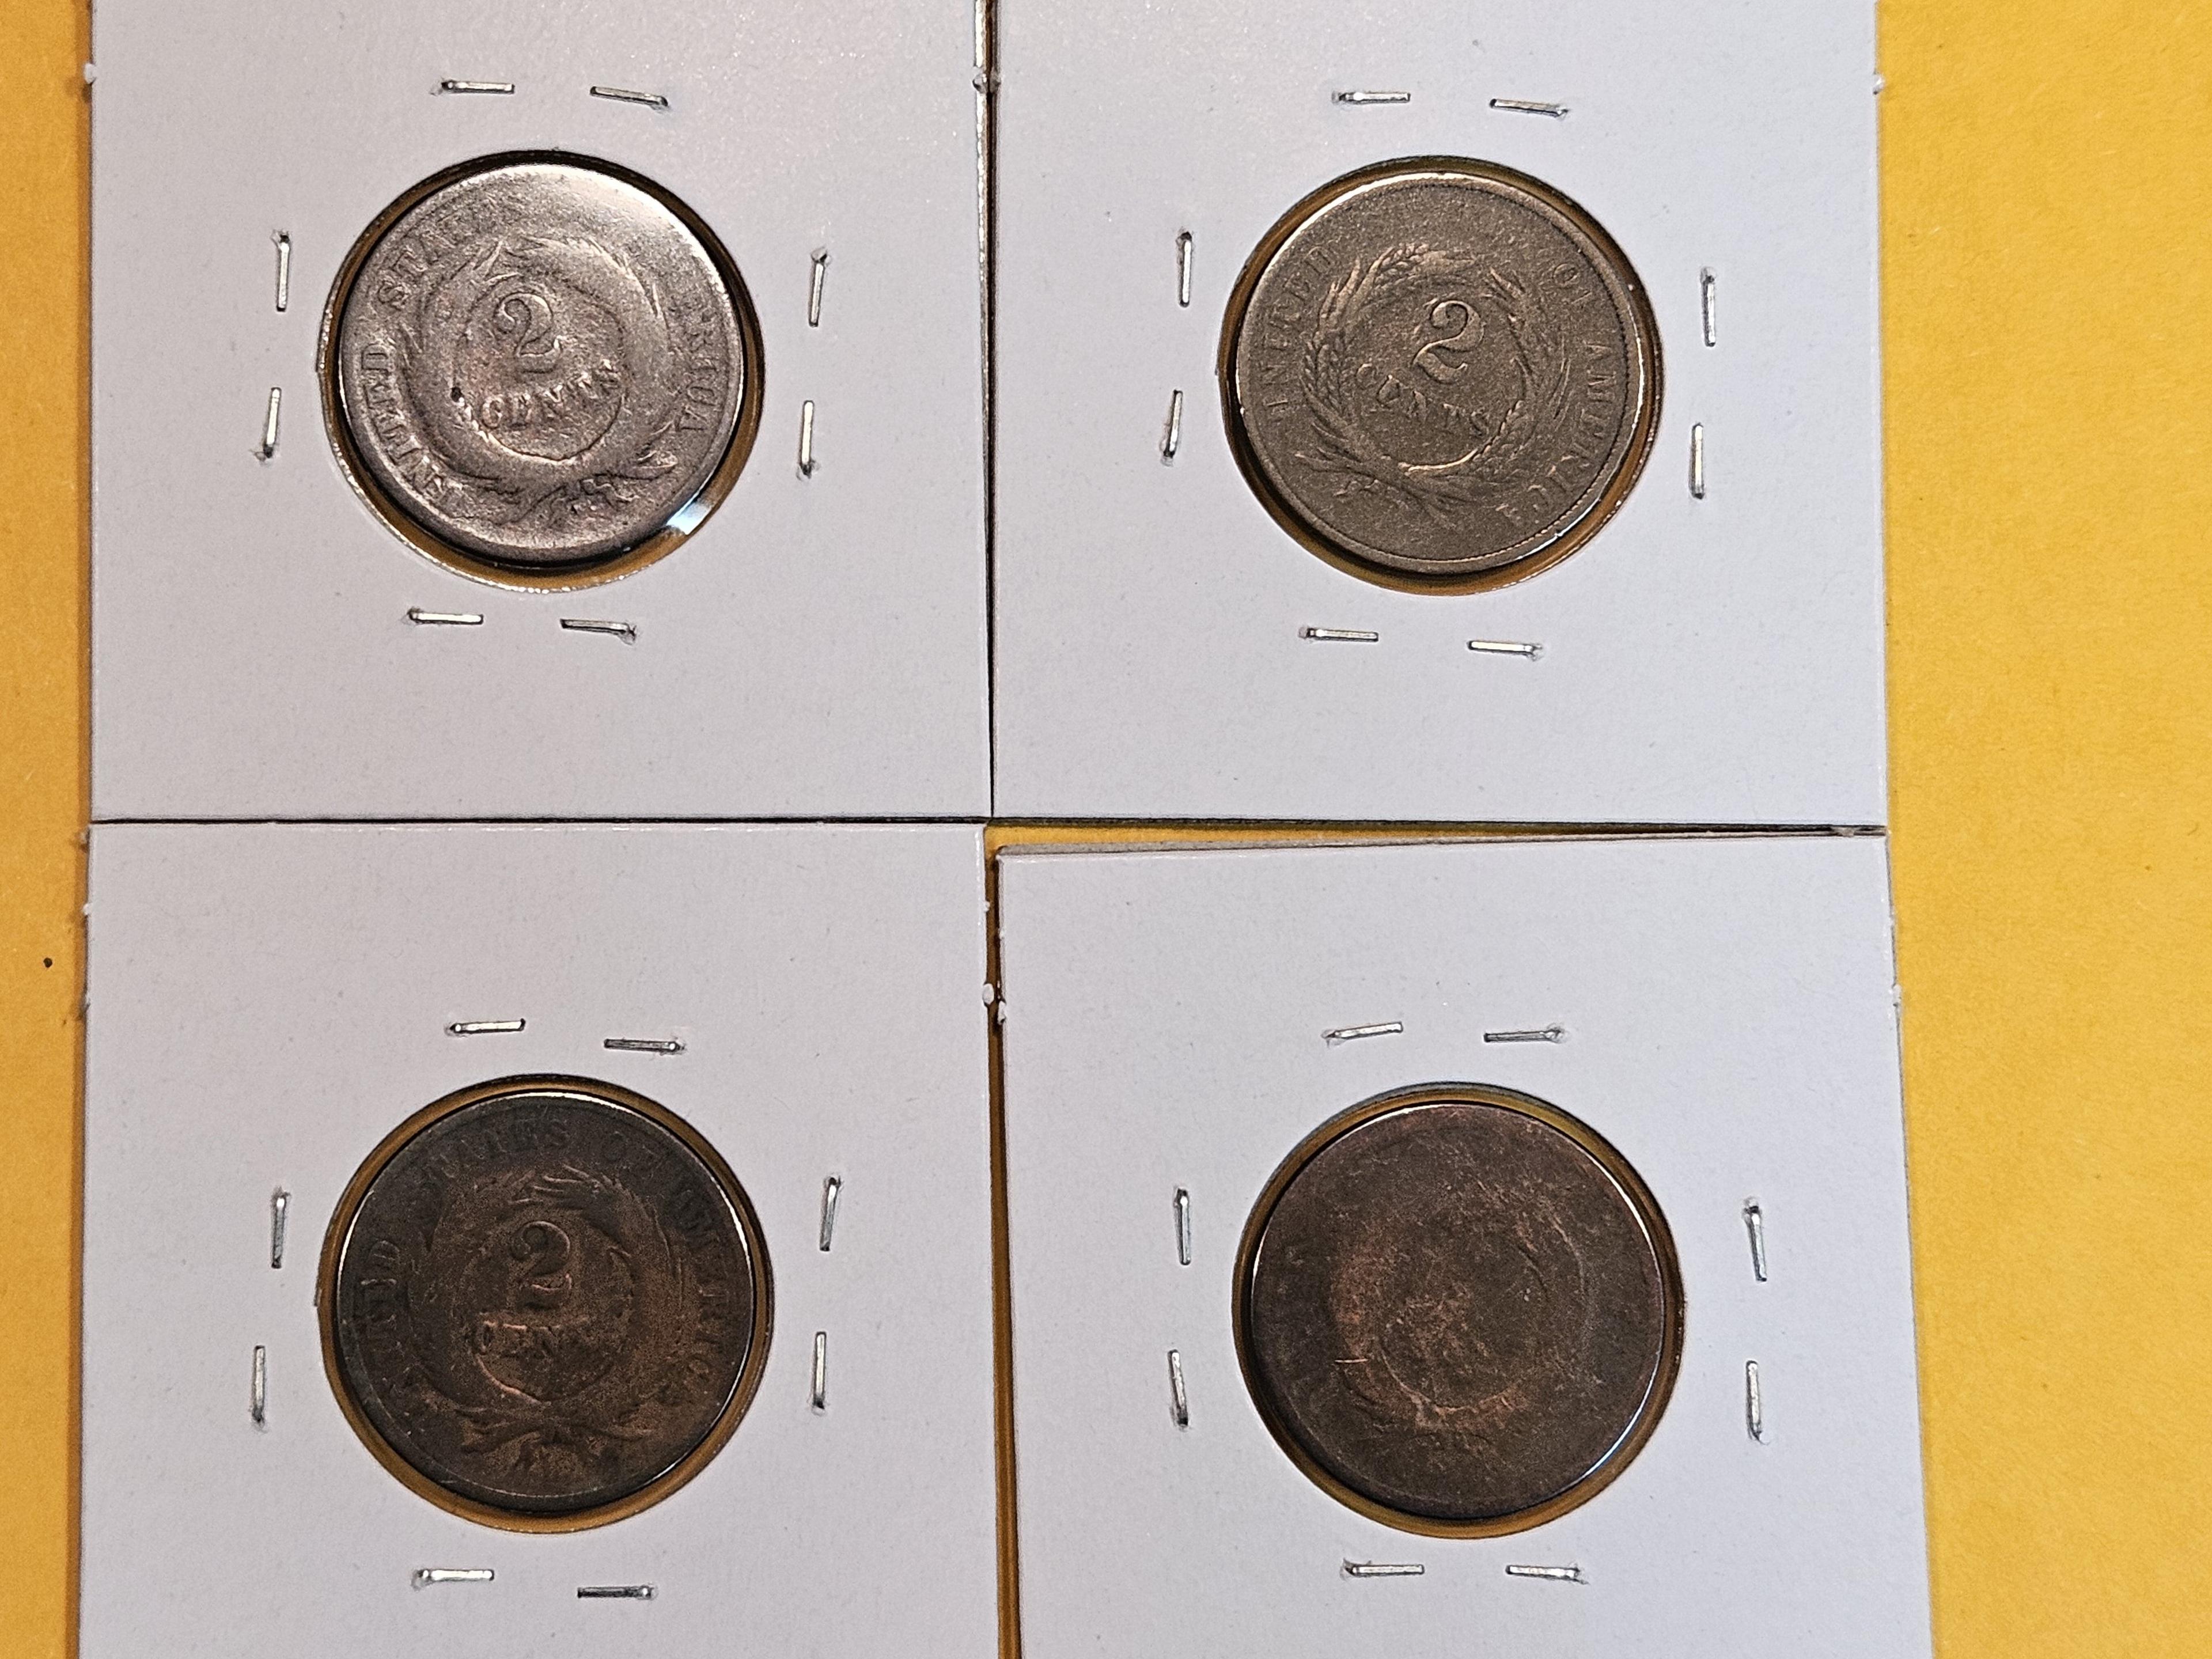 Four 2-Cent pieces